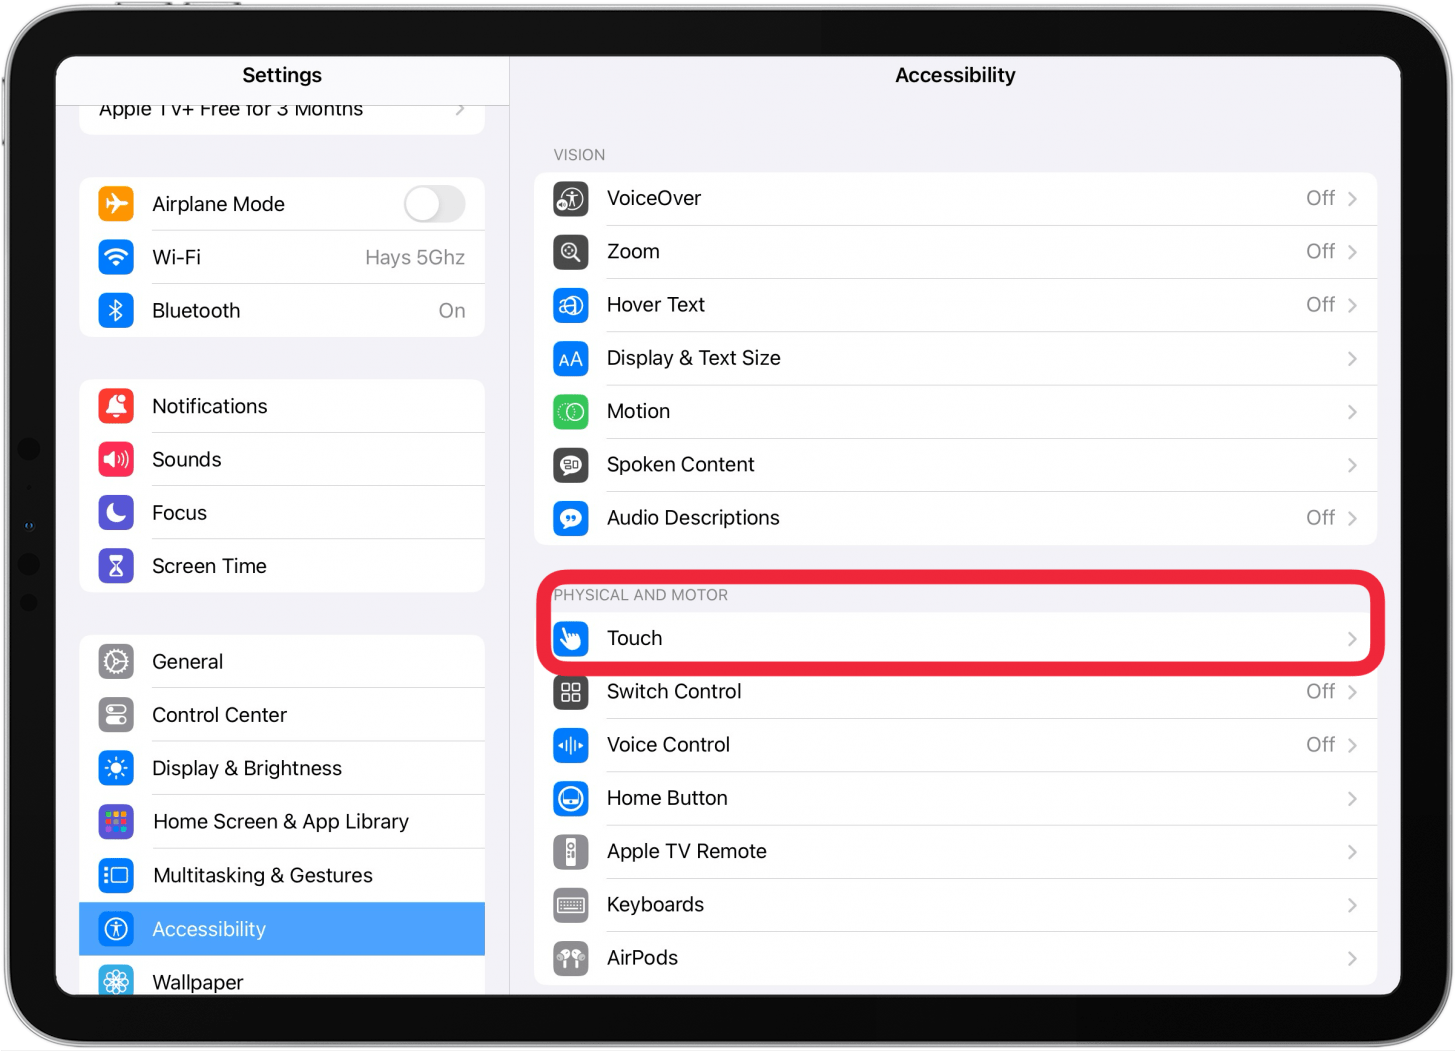 toque accesibilidad y luego toque si el botón de inicio en el ipad no funciona.PNG